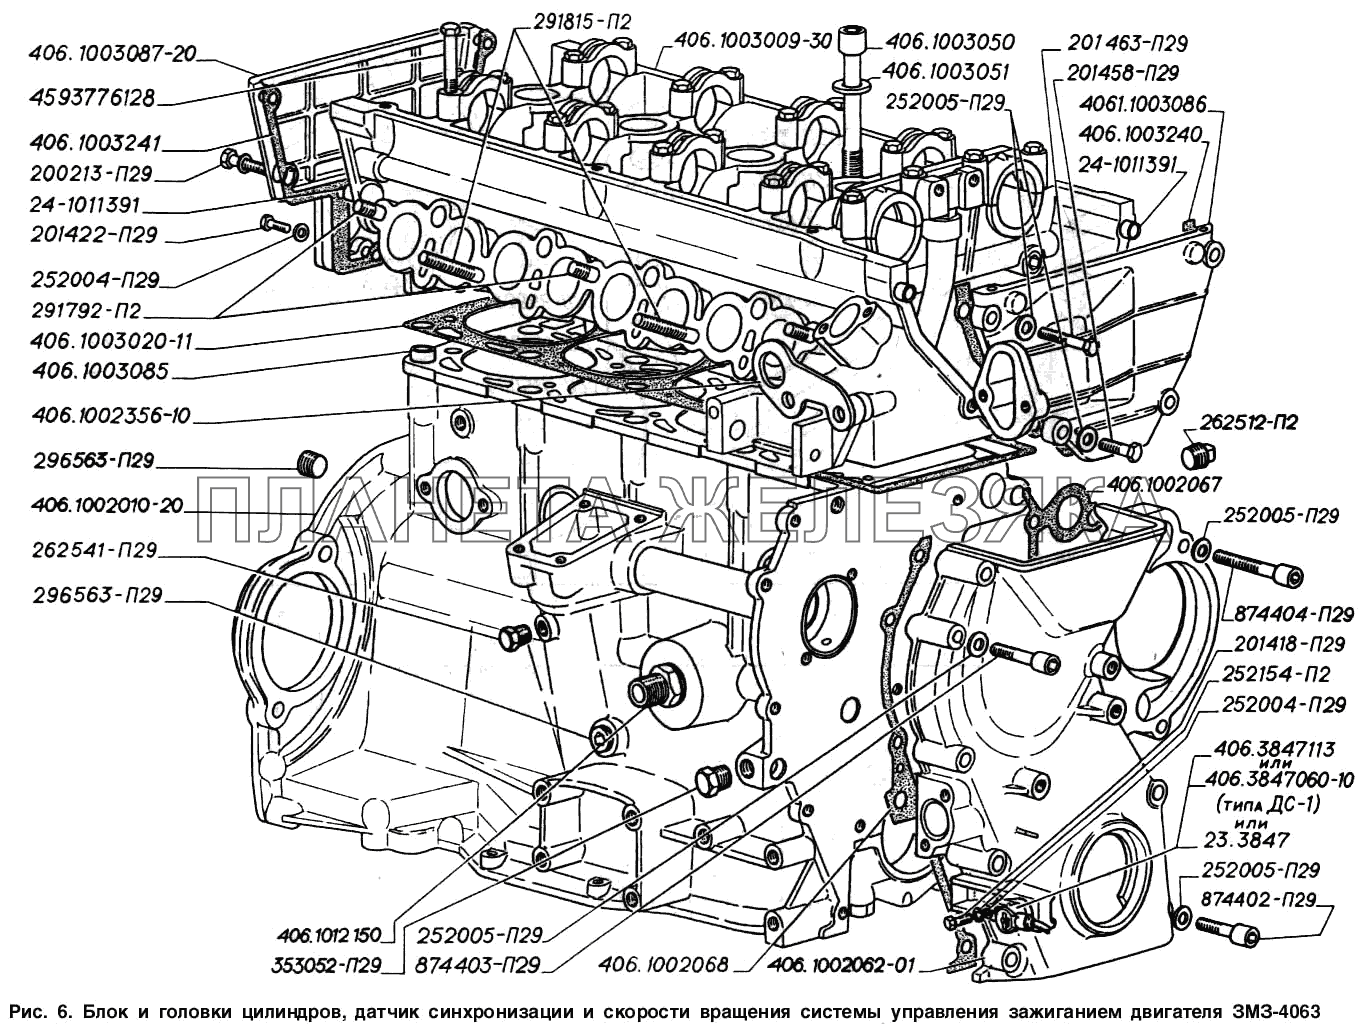 Блок и головка цилиндров, датчик синхронизации и скорости вращения системы управления зажиганием двигателя ЗМЗ-4063 ГАЗ-2217 (Соболь)